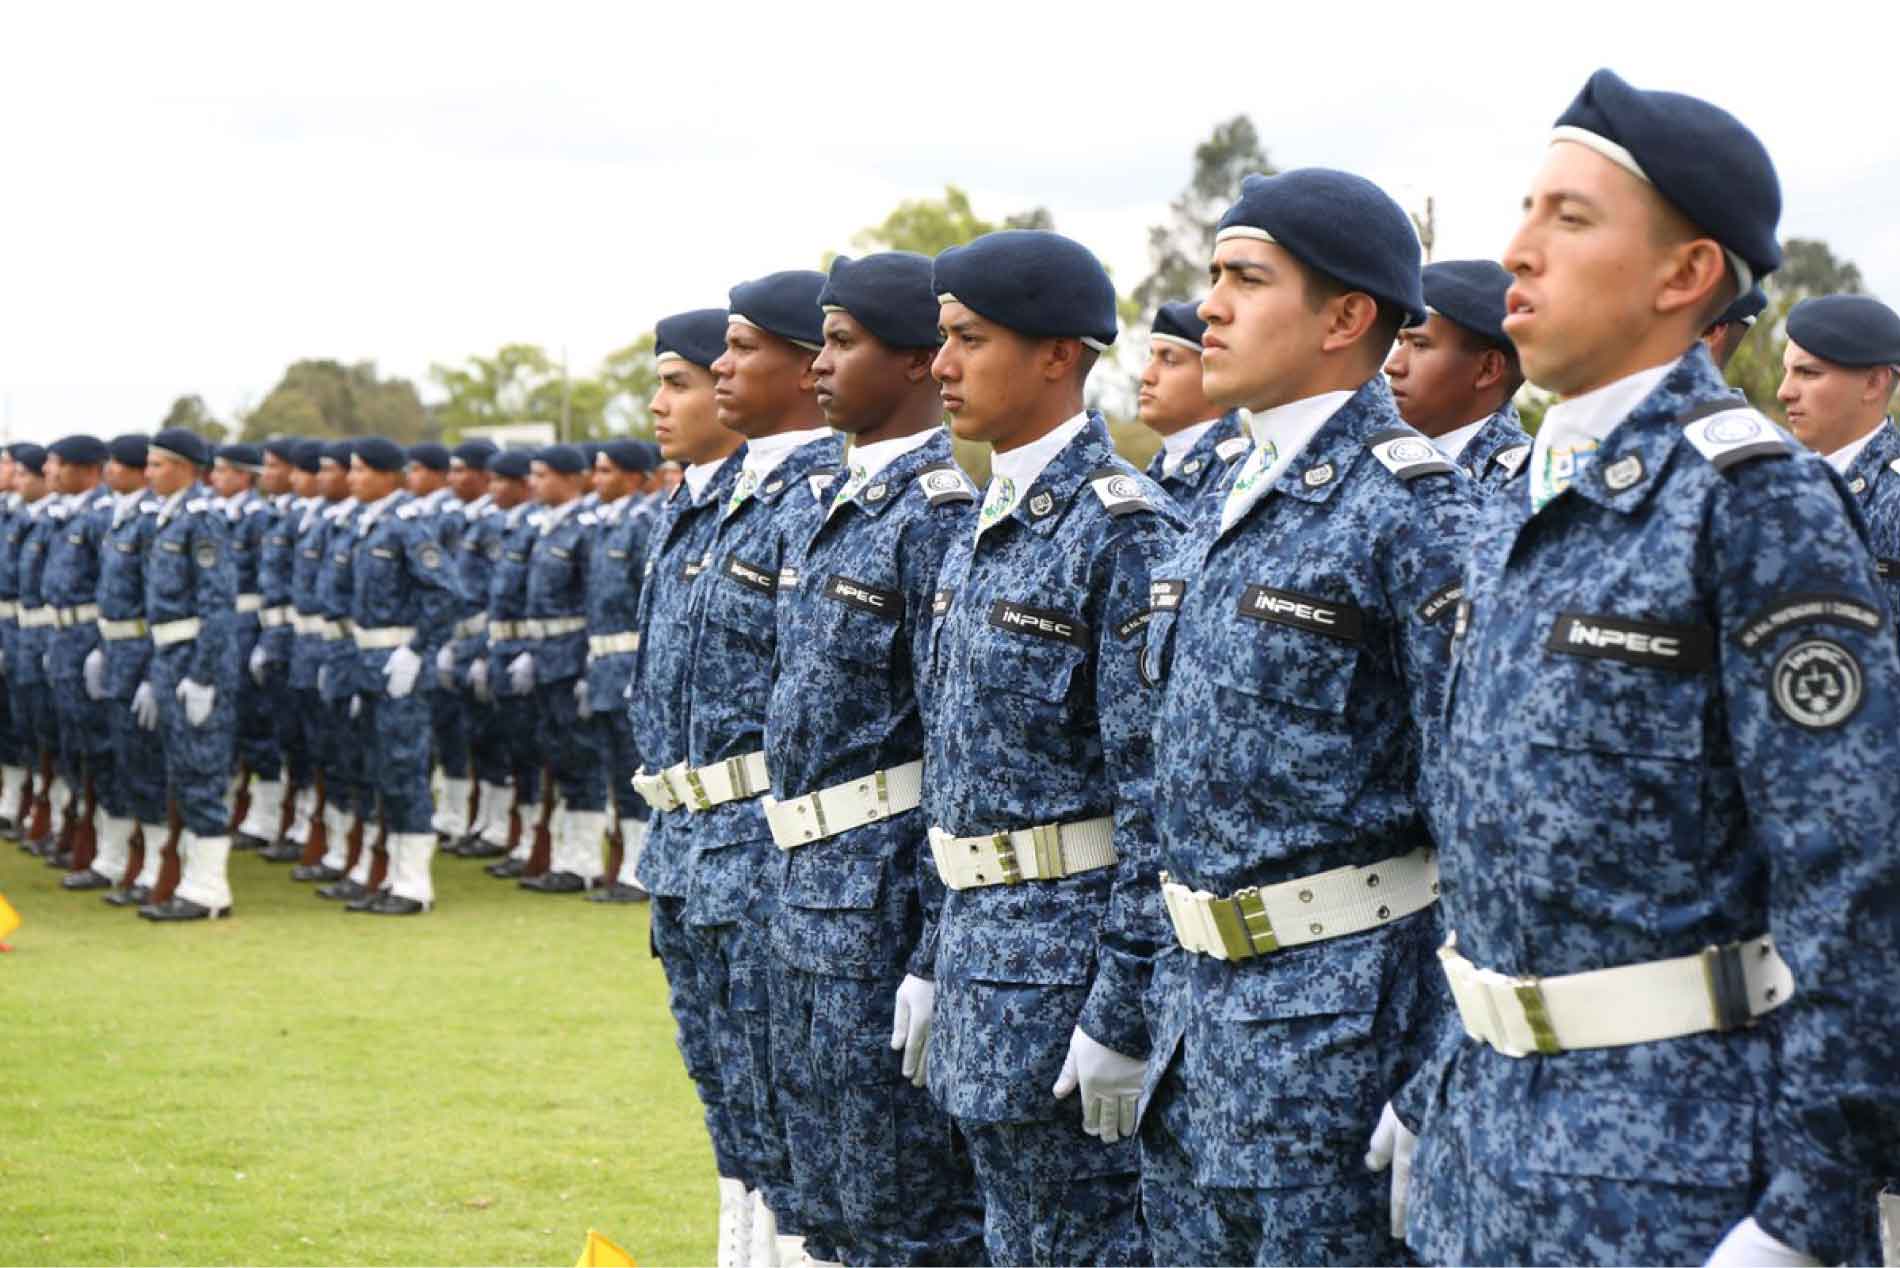 Grupo de jóvenes con uniforme del INPEC, en ceremonia militar.